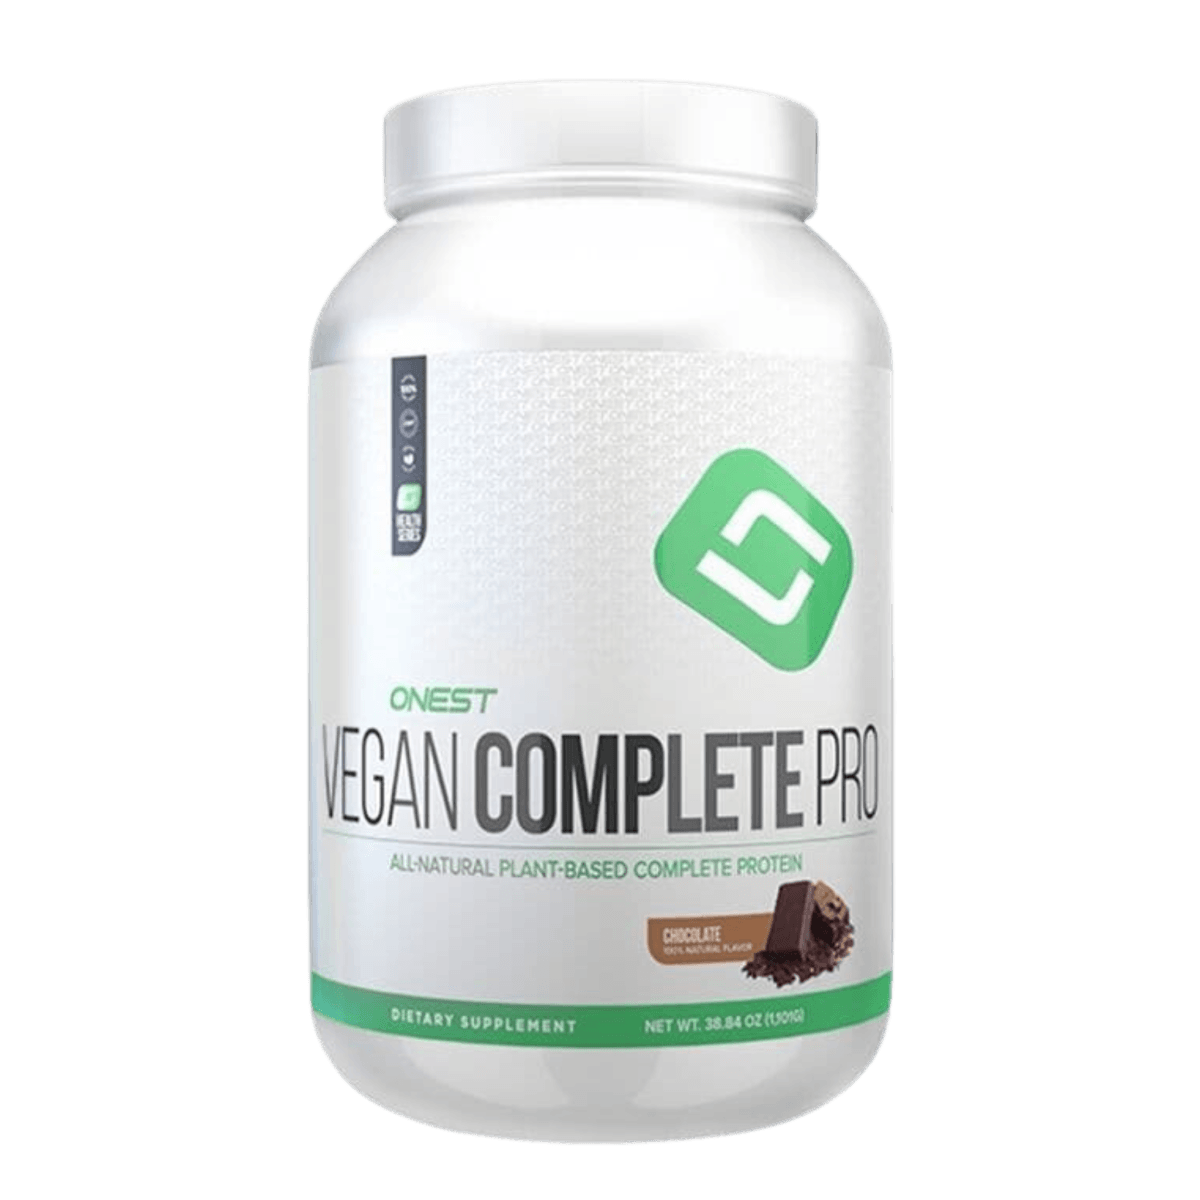 ONEST Vegan Complete Protein